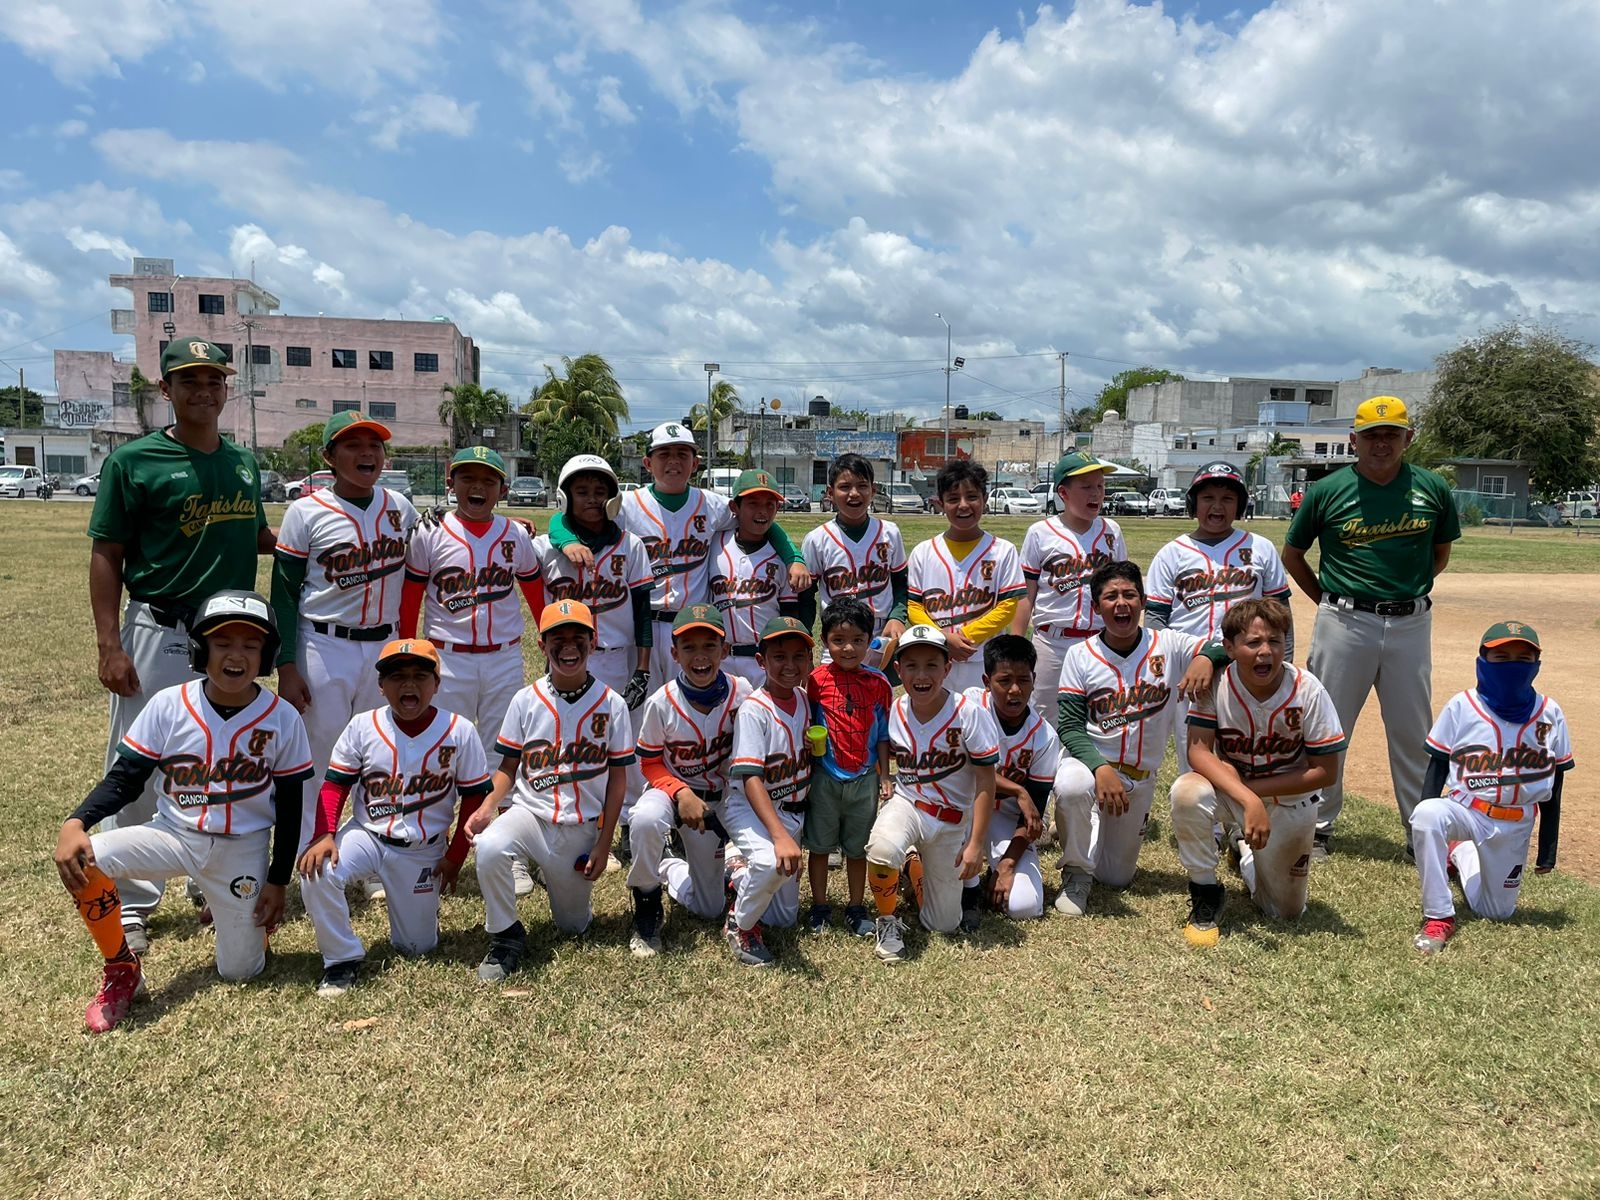 El pitcher Joshua Escalante se agenció el triunfo en uno de los campos infantiles de la unidad deportiva “José María Morelos u Pavón”